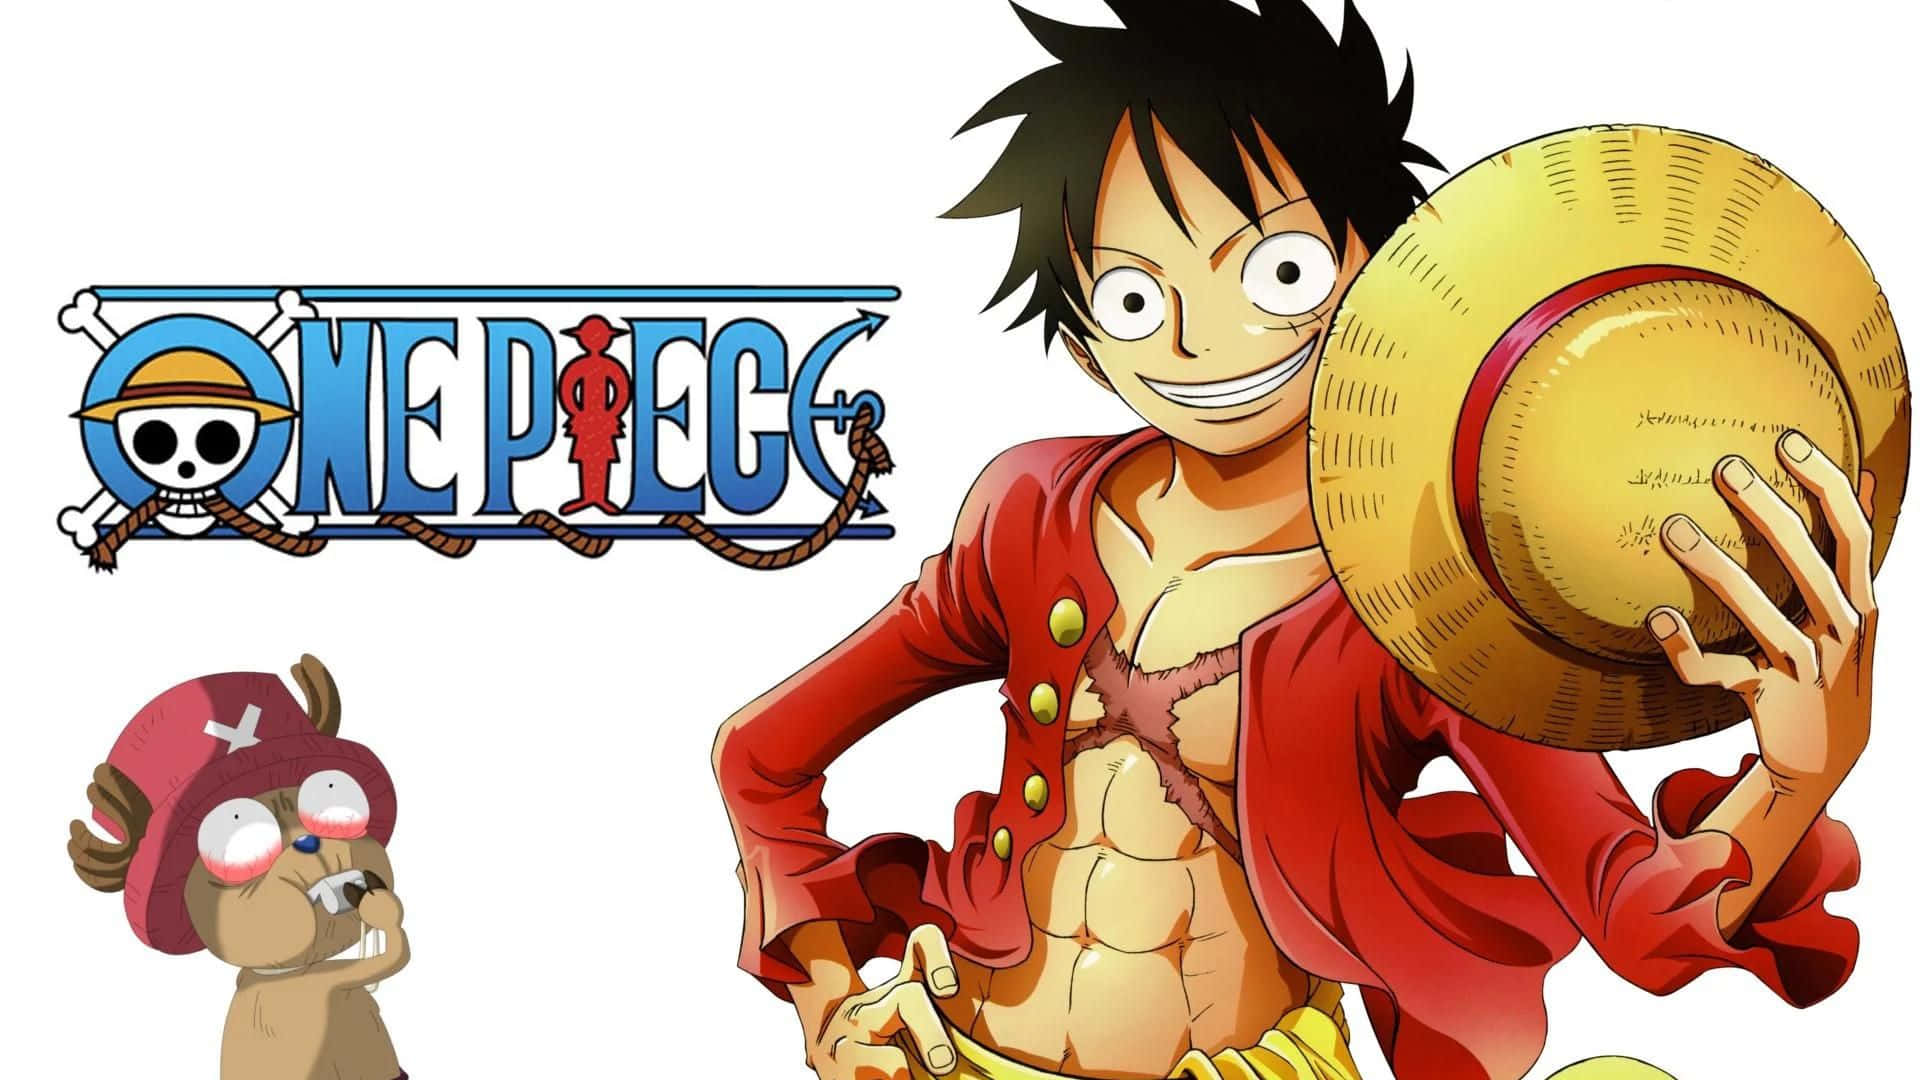 Hintergrundvon One Piece